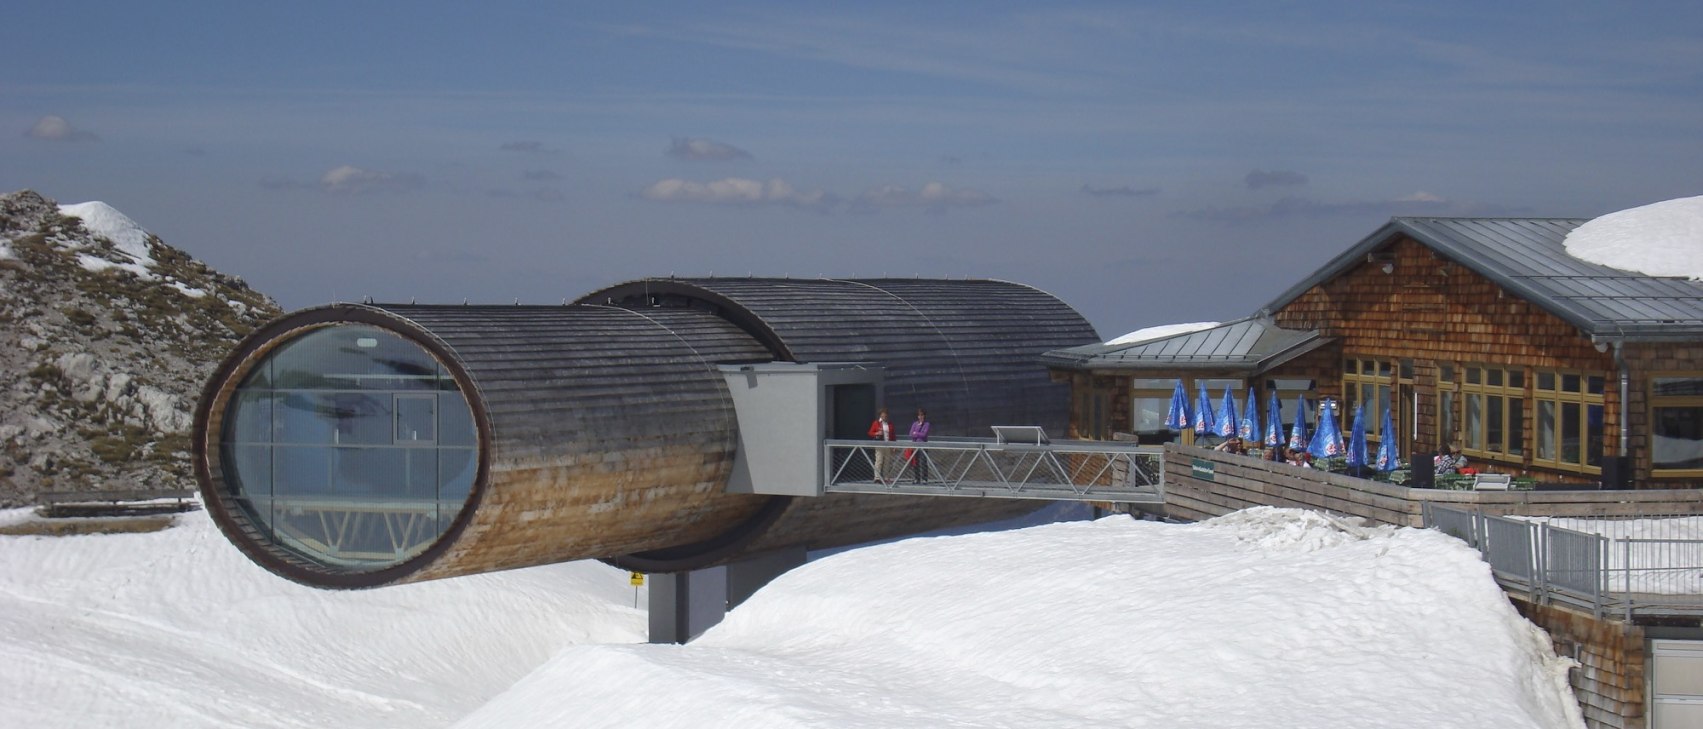 Naturinformationszentrum Karwendel mit Schnee, © Alpenwelt Karwendel | Christoph Schober